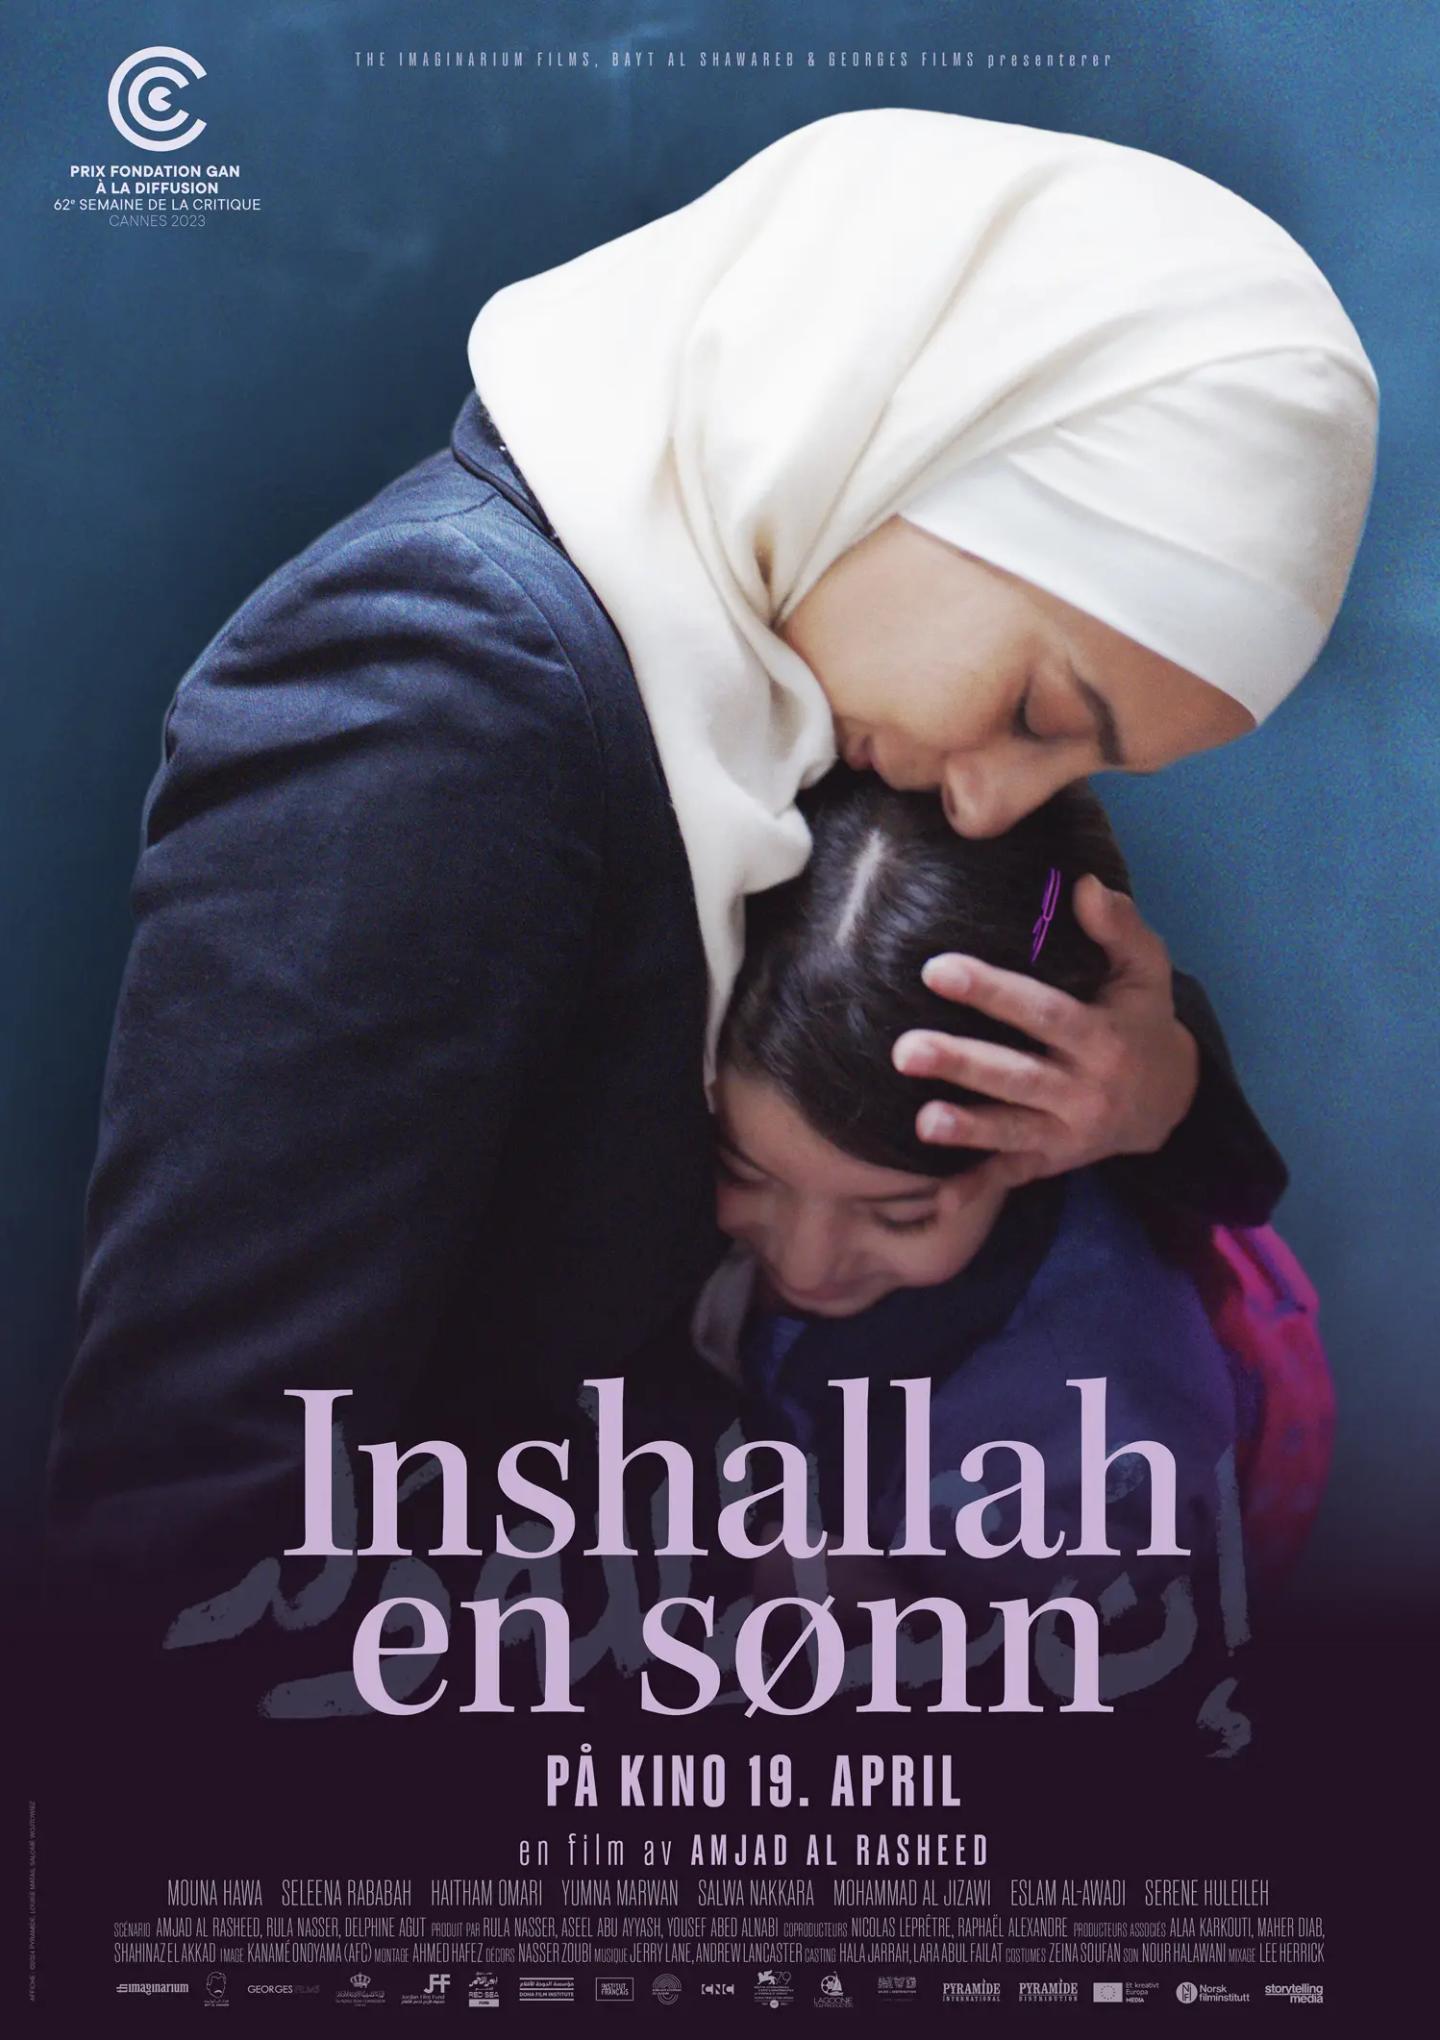 Plakat for 'Inshallah en sønn'